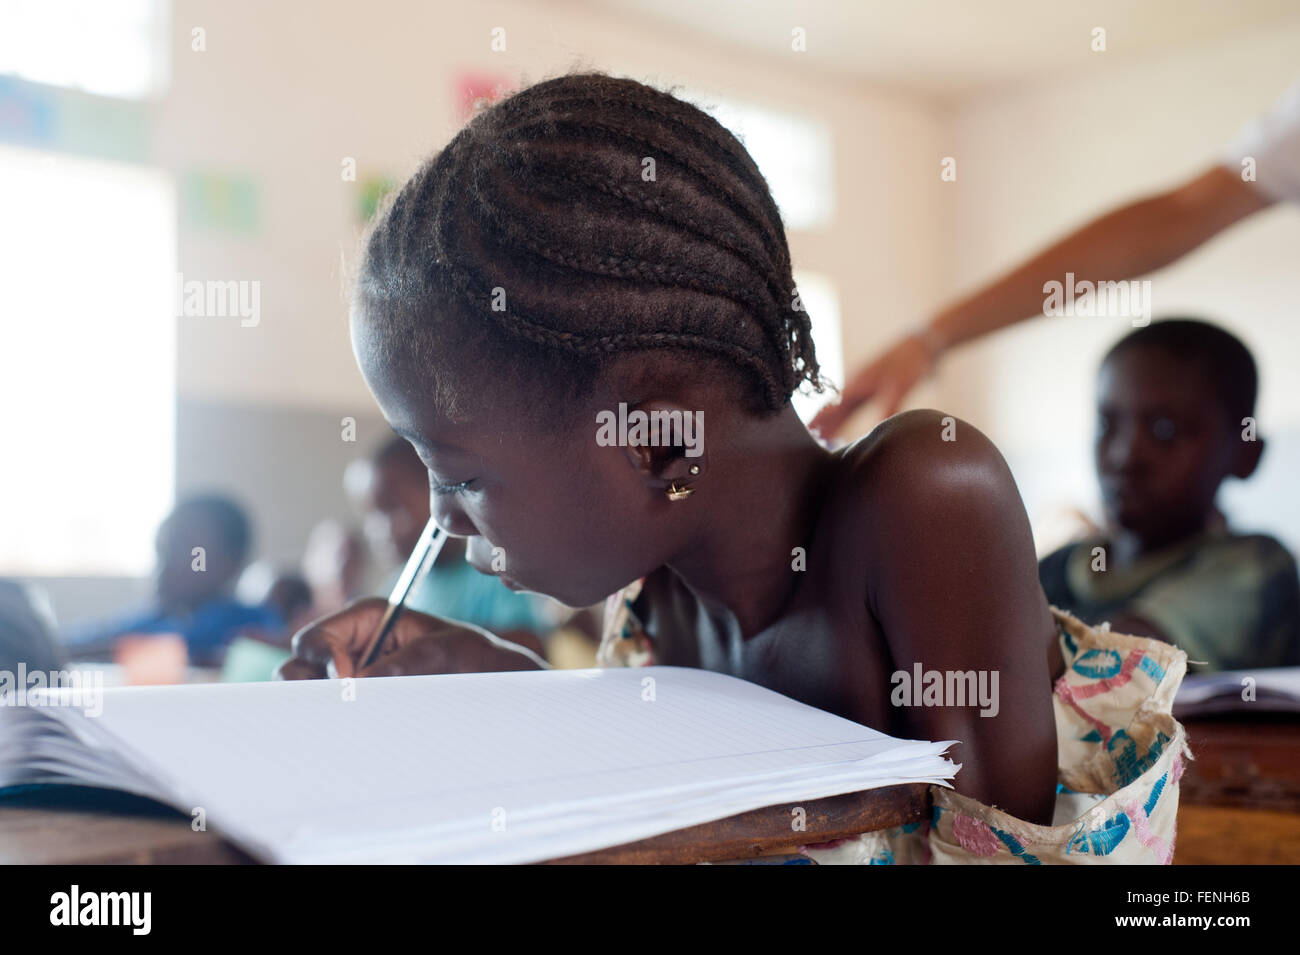 Mali, Afrika - August 2009 - Closeup Portrait eines schwarzen afrikanischen Grundschule Studenten schreiben Stockfoto